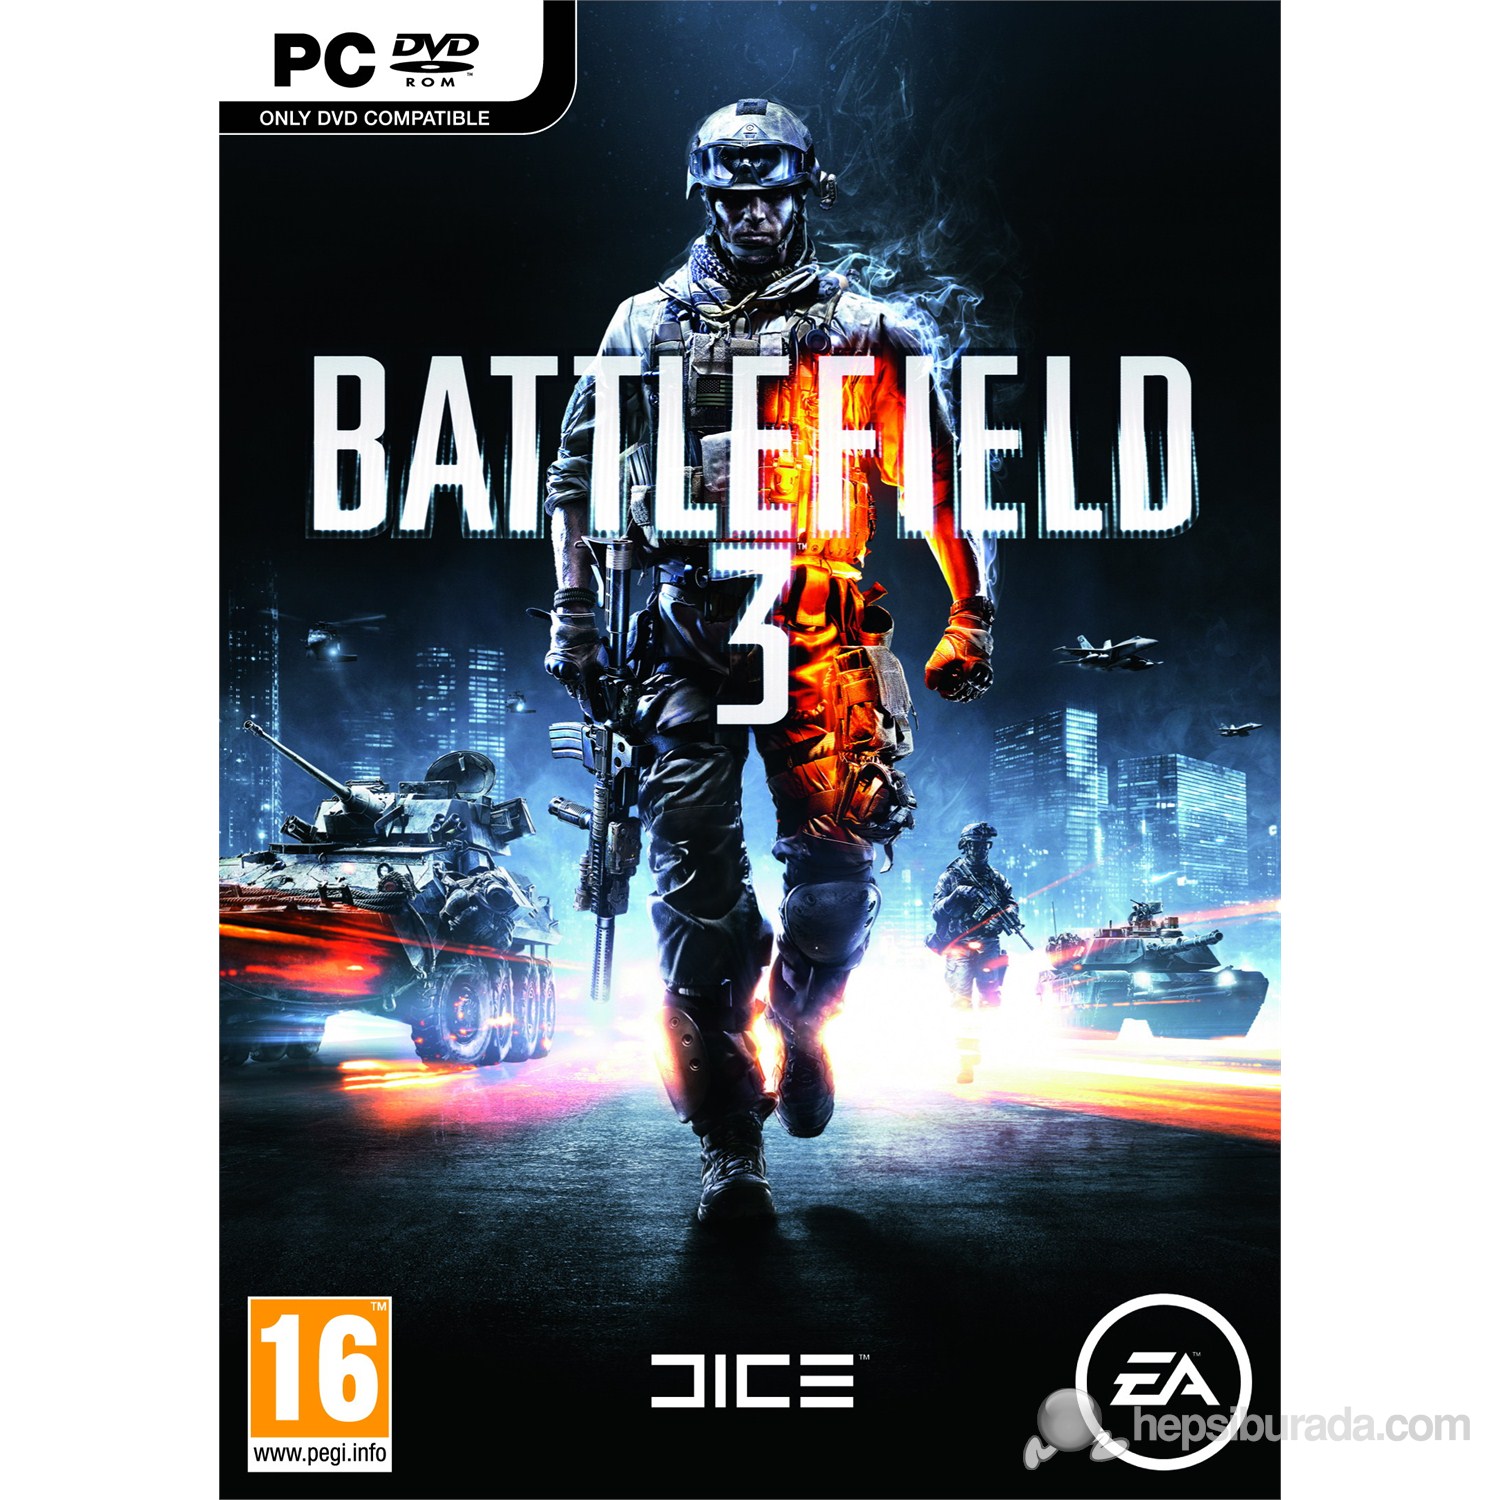 Battlefield 3 PC